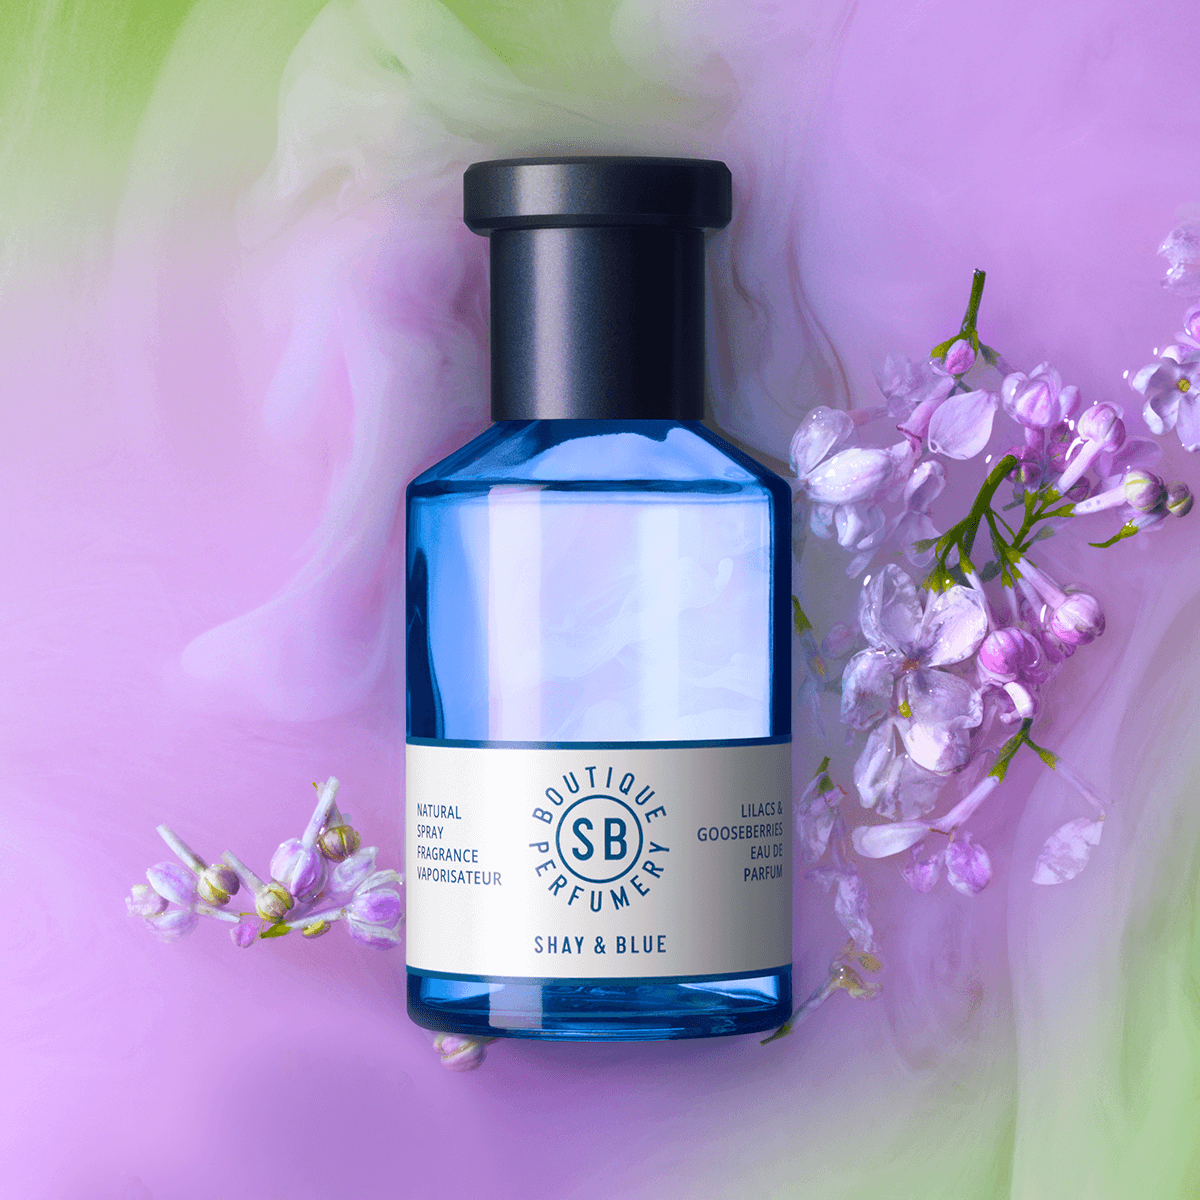 Lilacs & Gooseberries Fragrance 100ml | Eine verdrehte und süchtig machende saftige Blume. Obsessive Flieder öffnen sich für den Nervenkitzel dunkler Dämonen. | Clean All Gender Fragrance | Shay & Blue